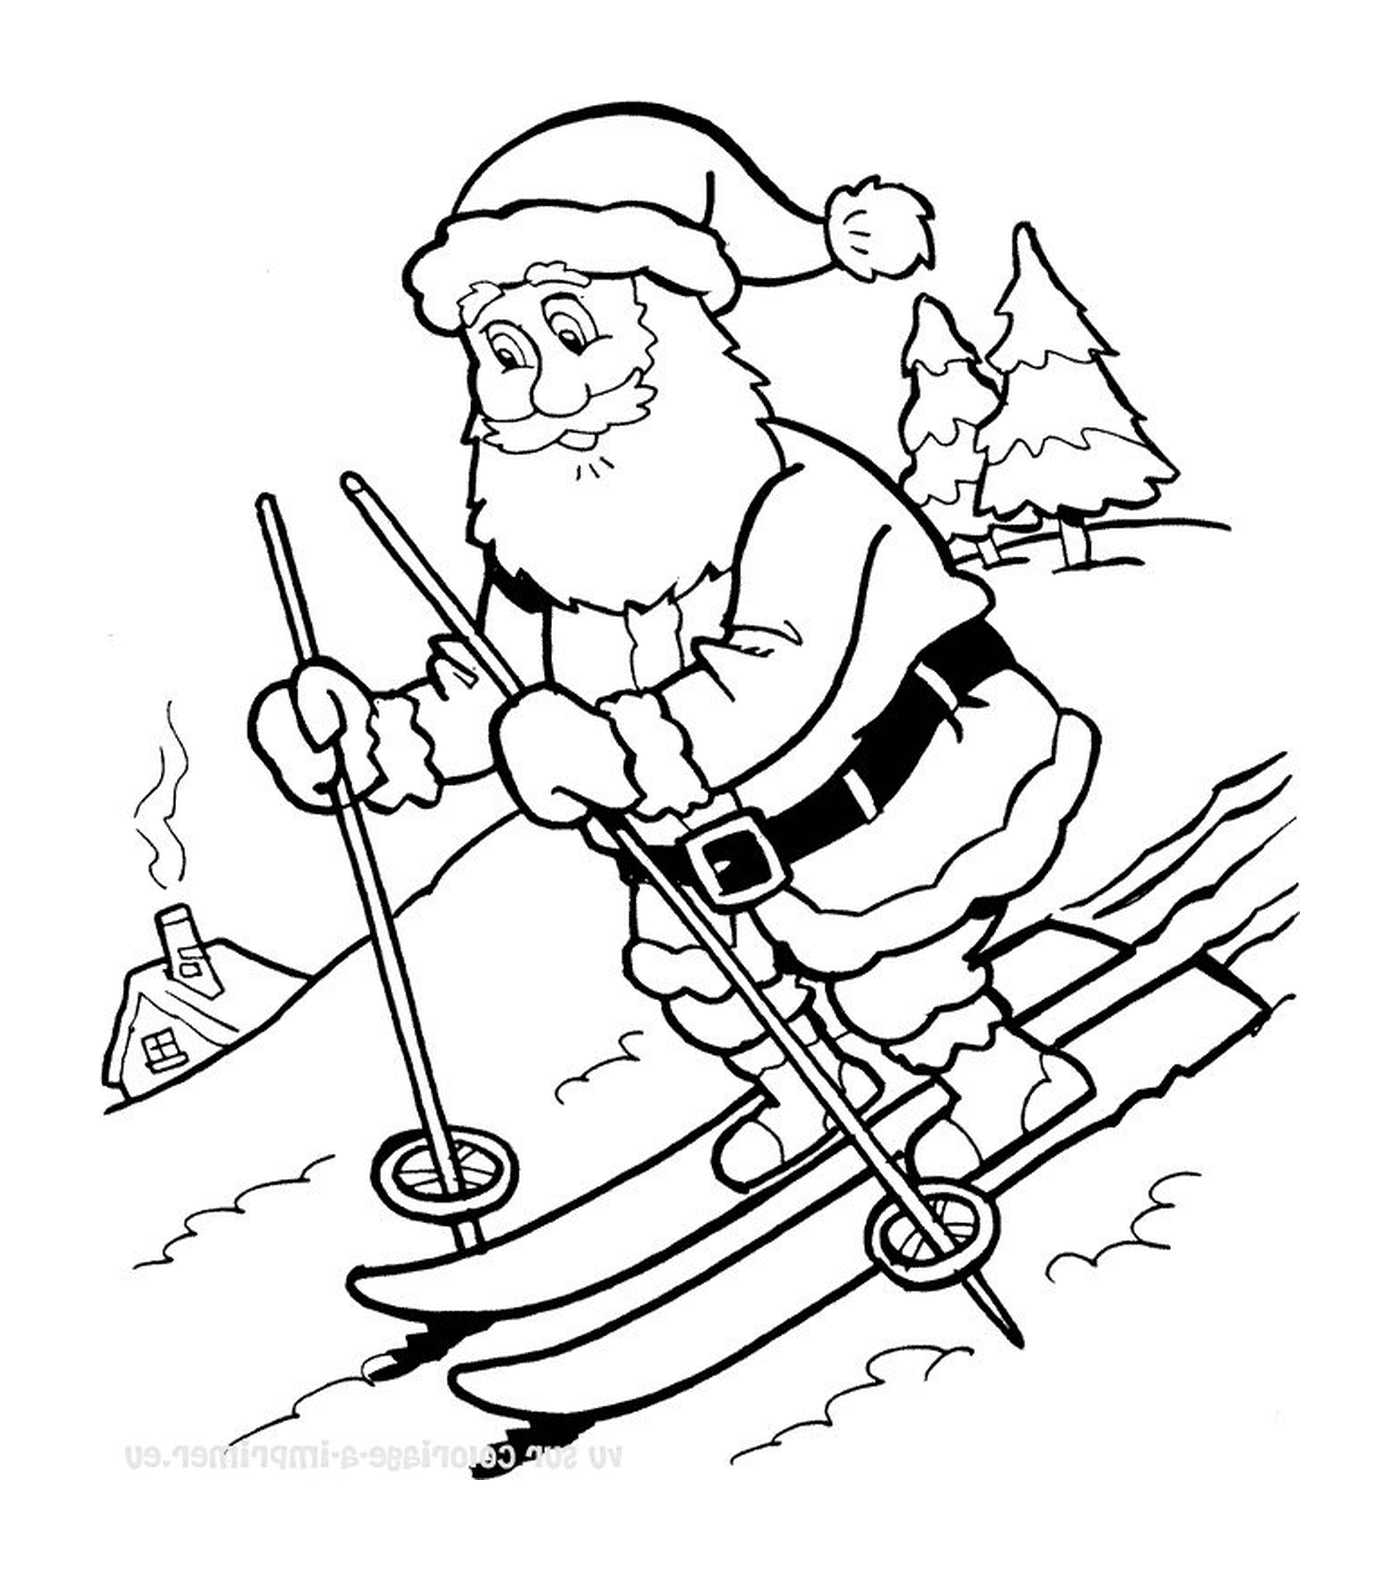  Papá Noel está esquiando 